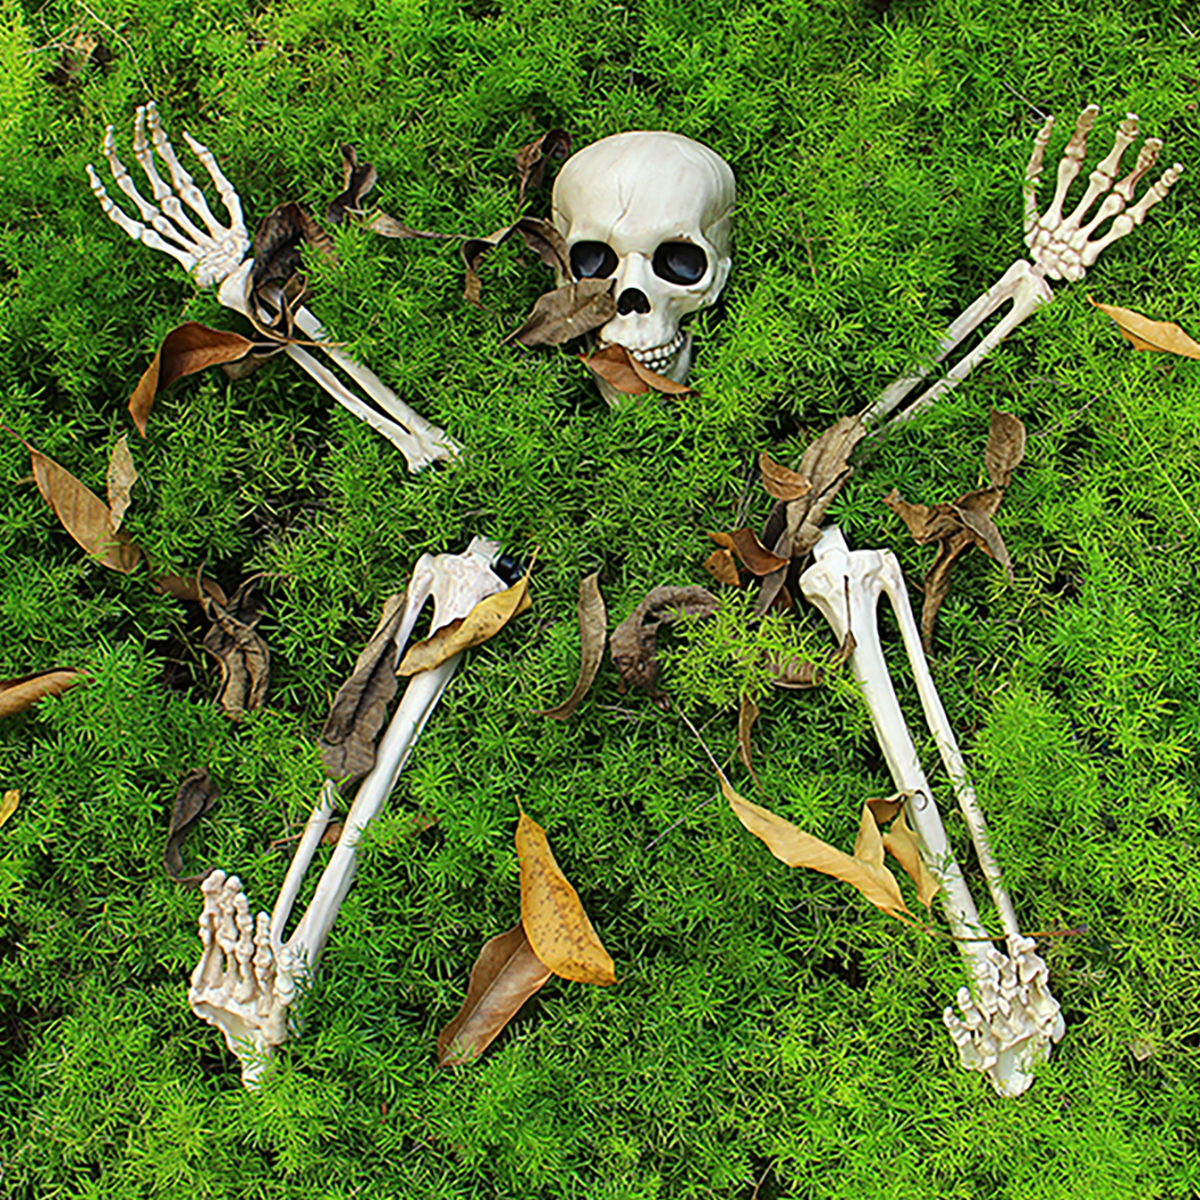 

Halloween Scary Horror Skeleton Decorations Head Bones Skull Hand Outdoor Prop Party